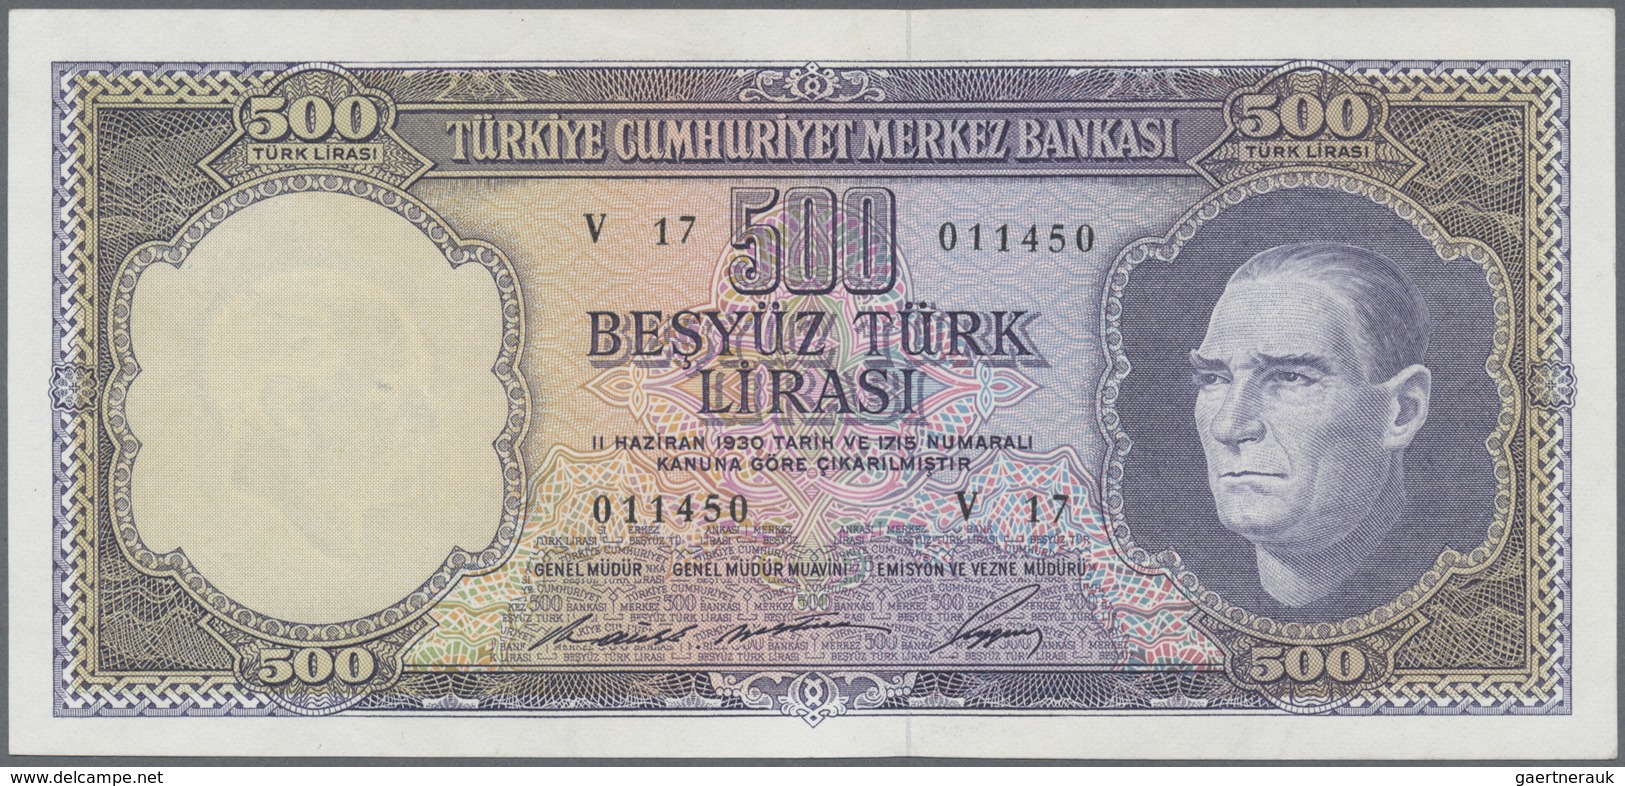 Turkey / Türkei: 500 Lirasi L. 1930 (1966-1969) "Atatürk" - 5th & 6th Issue, P.183, Very Nice Note W - Turquie